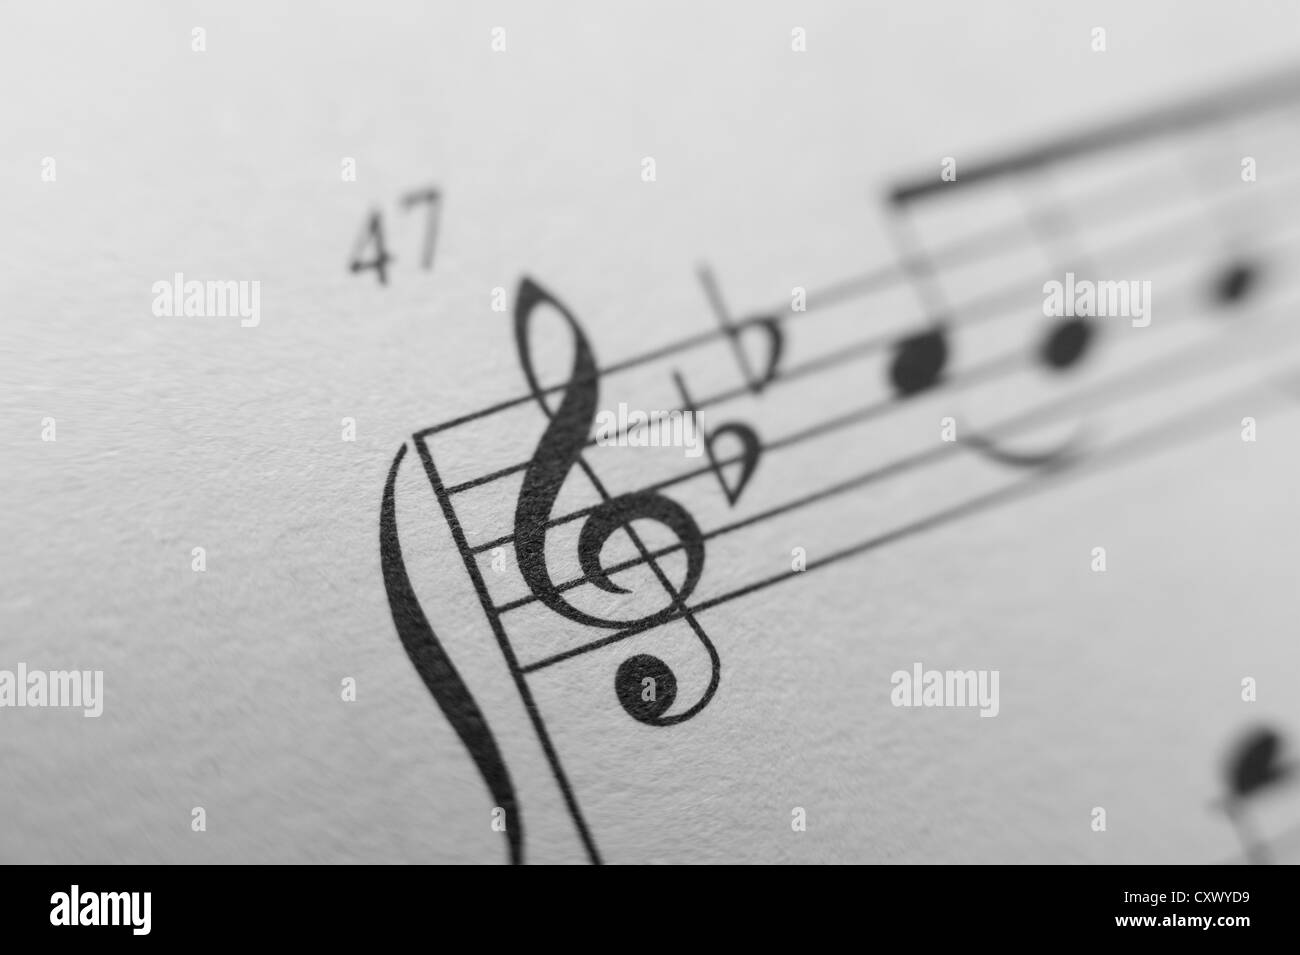 Feuille de score notes de musique mélodie close up noir blanc composition lignes mains gauche droite treble cleft imprimé sur du papier Banque D'Images